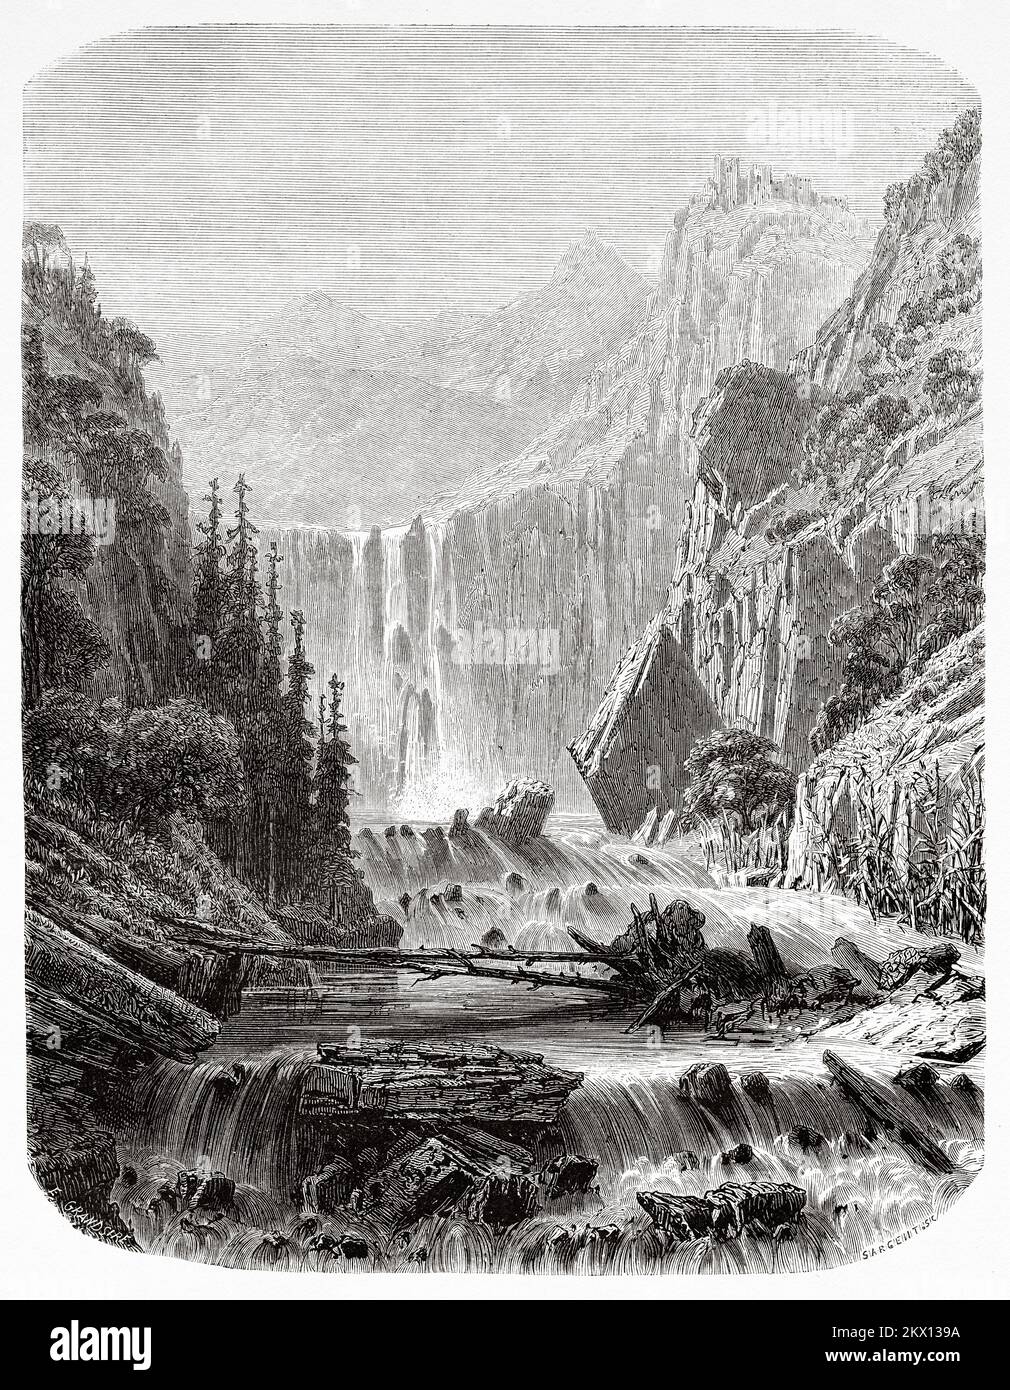 Cascades traversant les monts Taurus, les montagnes Aladaglar et Bolkar, Anatolie du sud, Turquie. Voyage dans les montagnes Cilicia et Taurus en 1852-1853 par Victor Langlois Banque D'Images